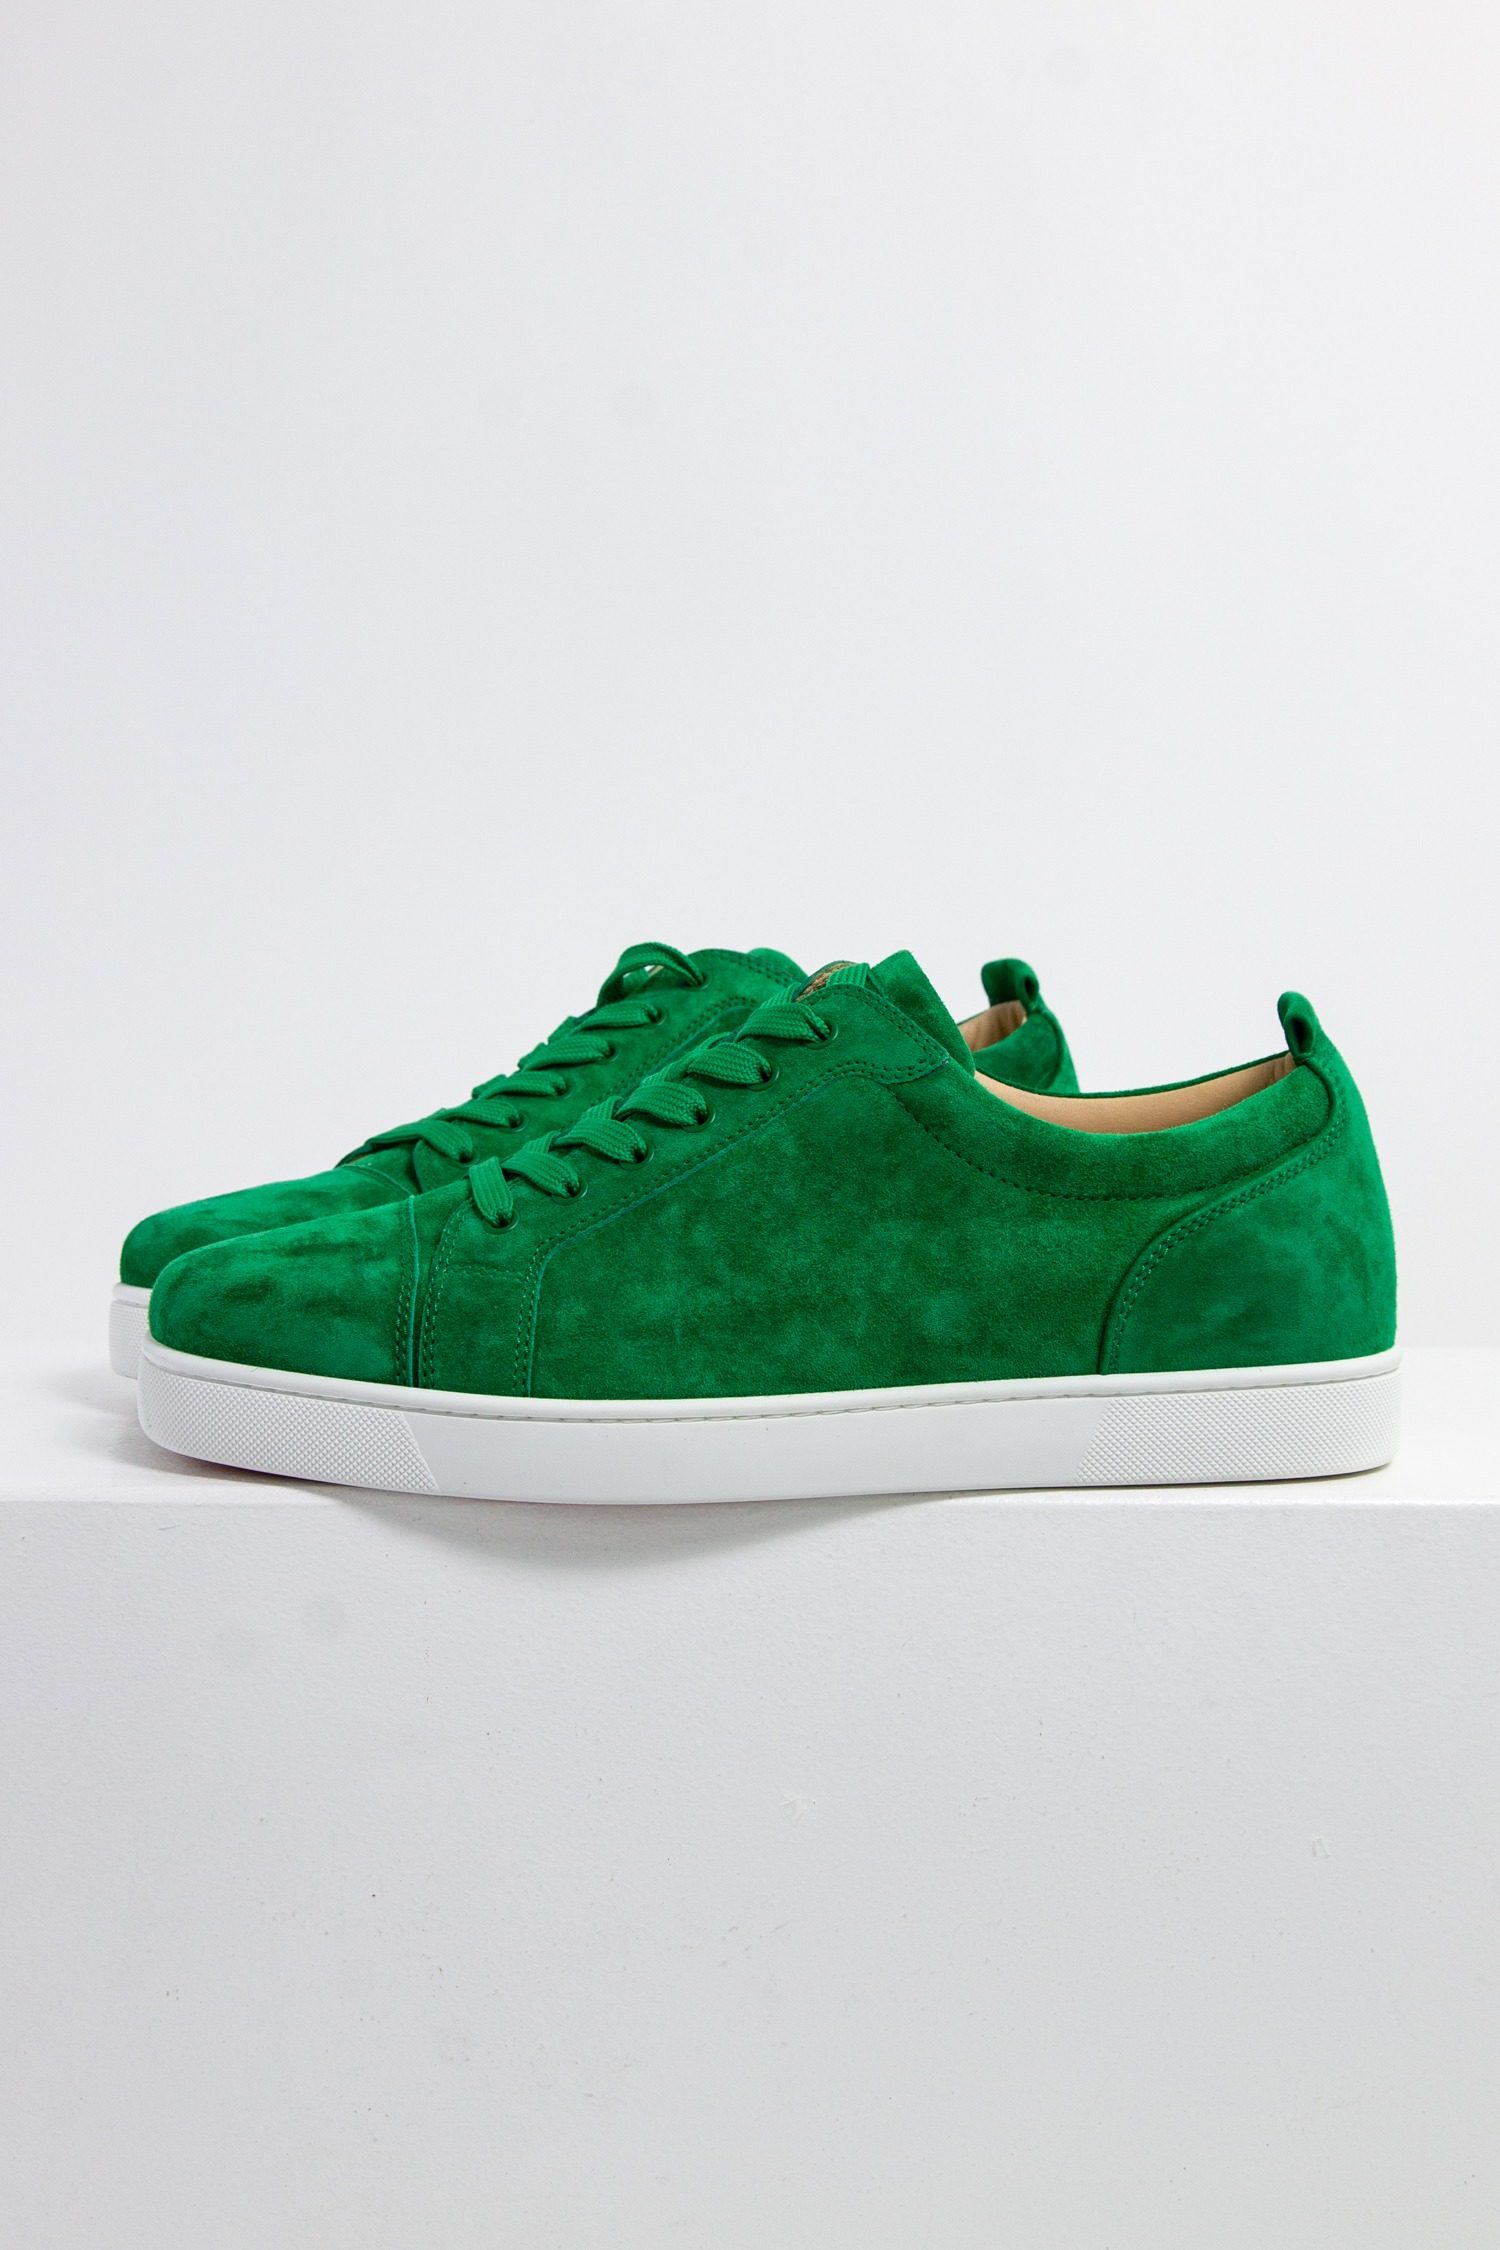 Louboutin "Louis Junior" Sneaker in grün